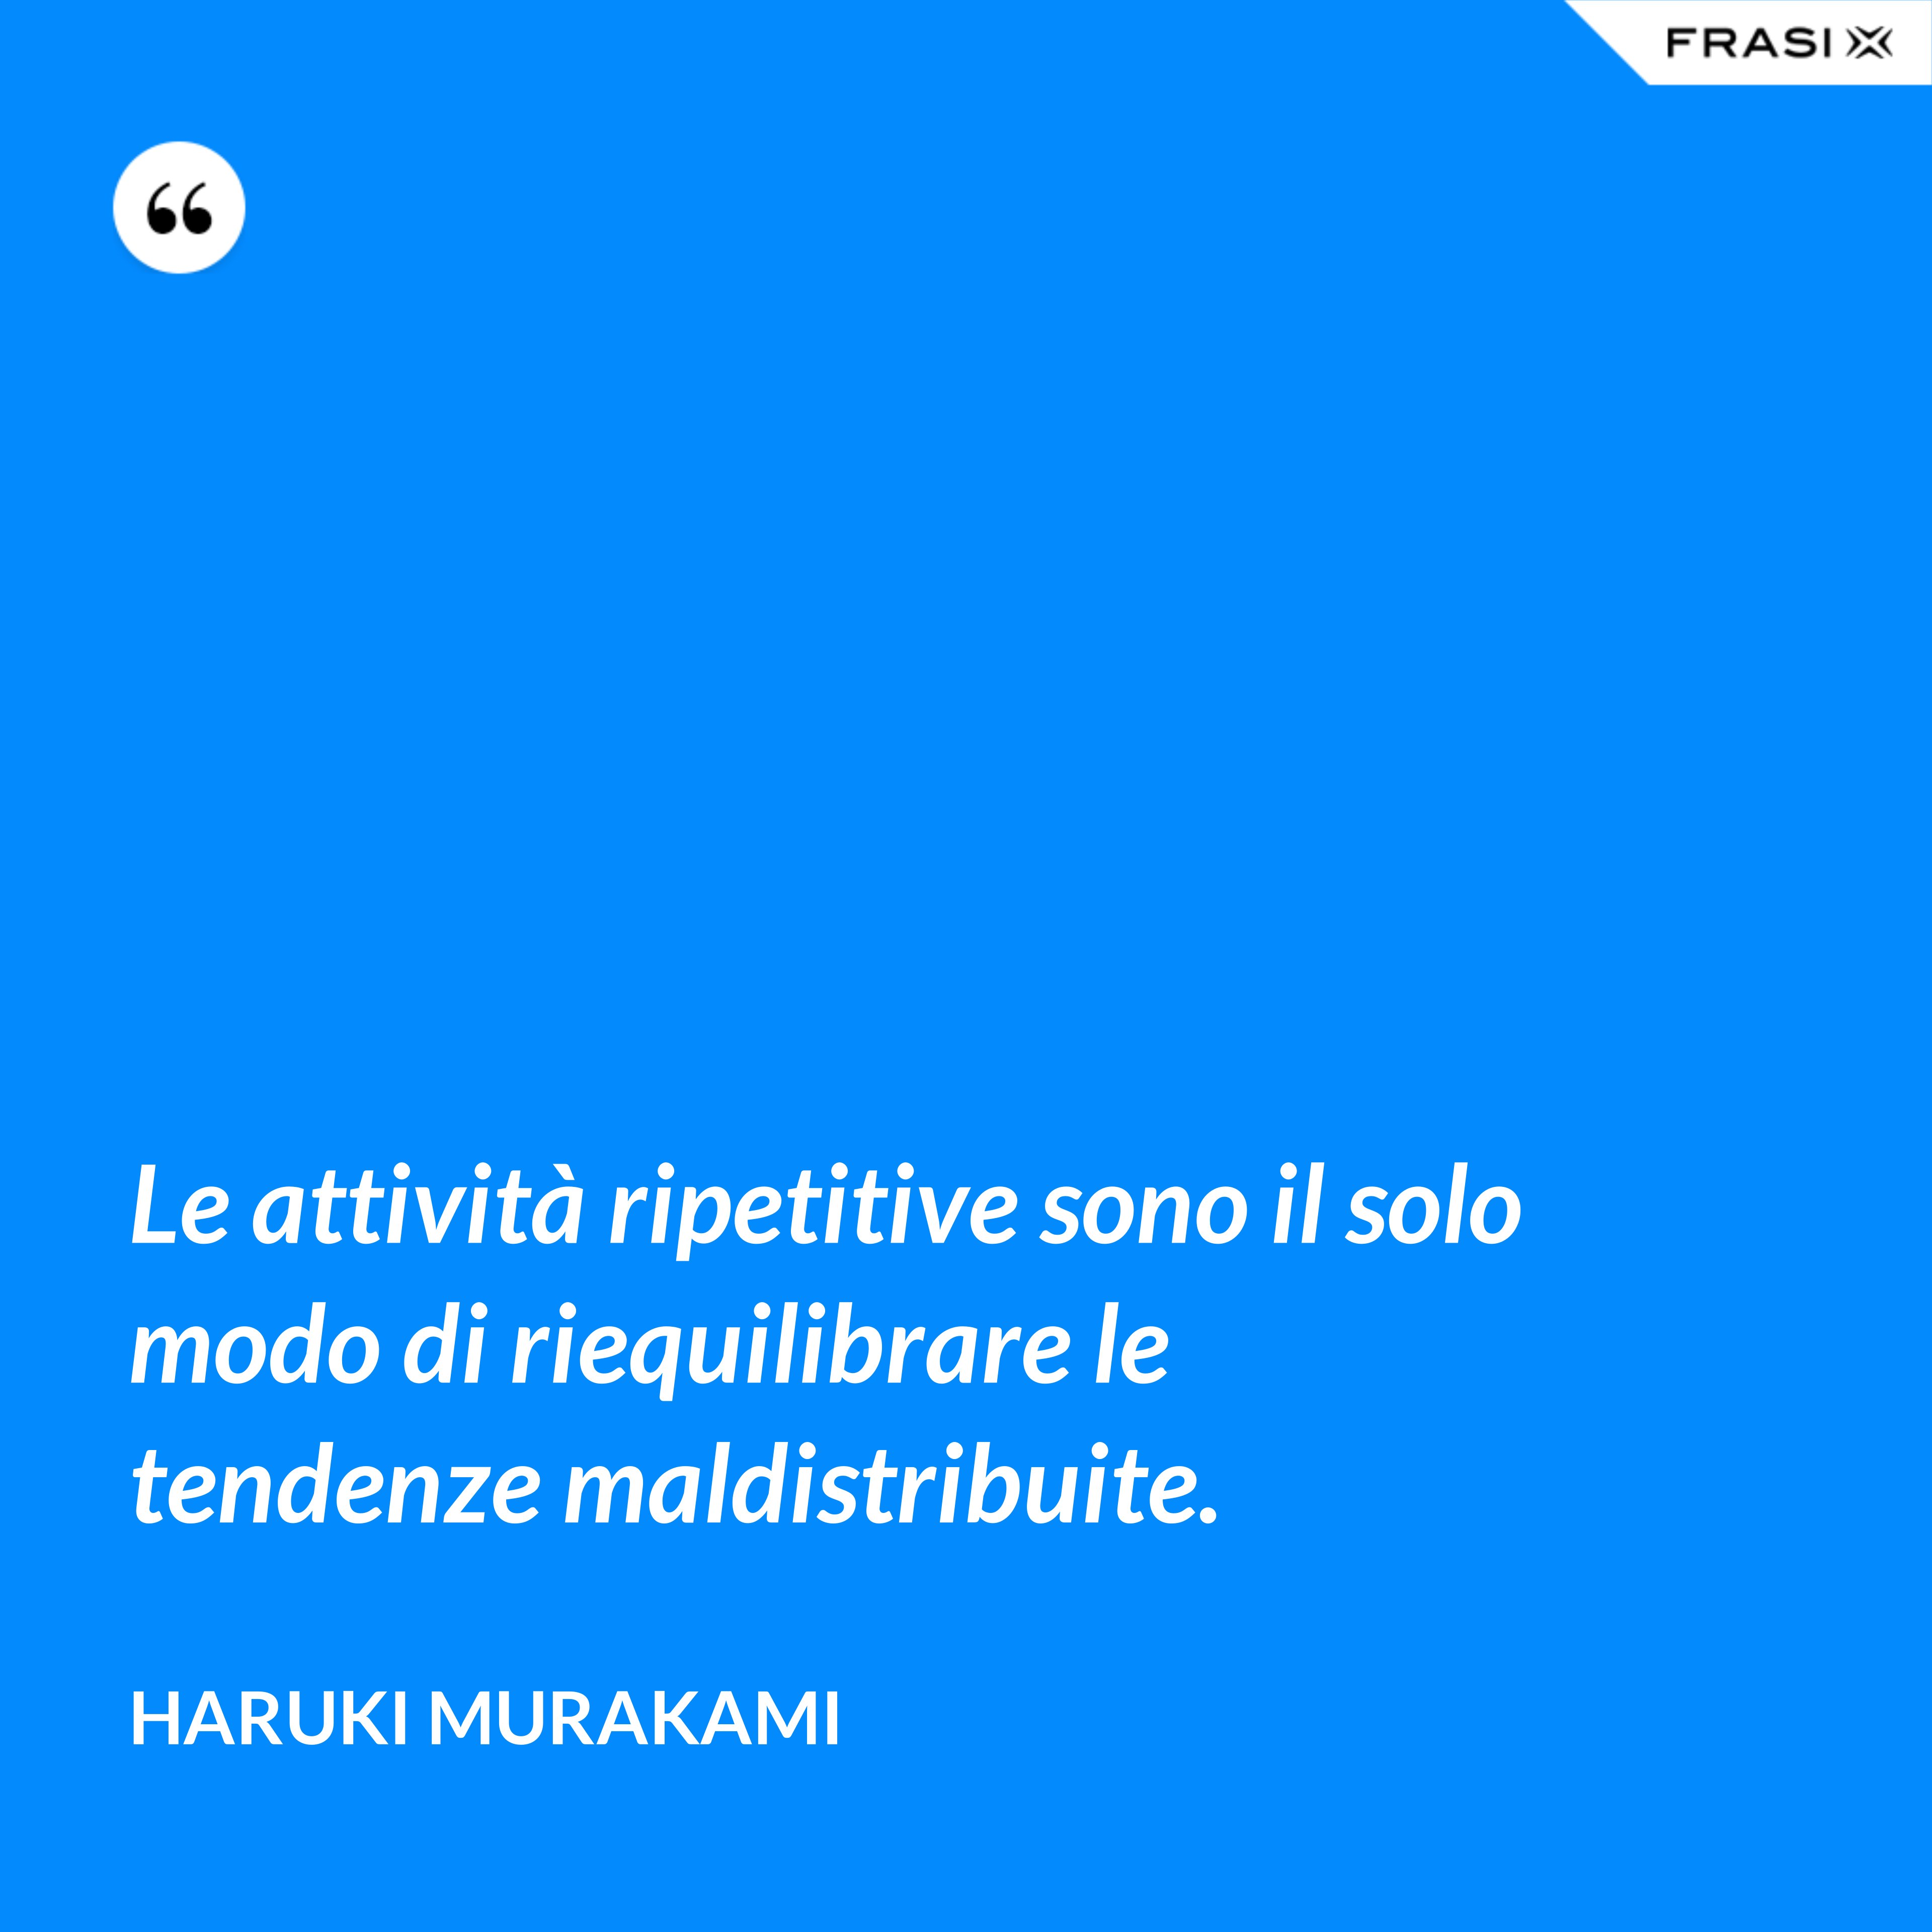 Le attività ripetitive sono il solo modo di riequilibrare le tendenze maldistribuite. - Haruki Murakami